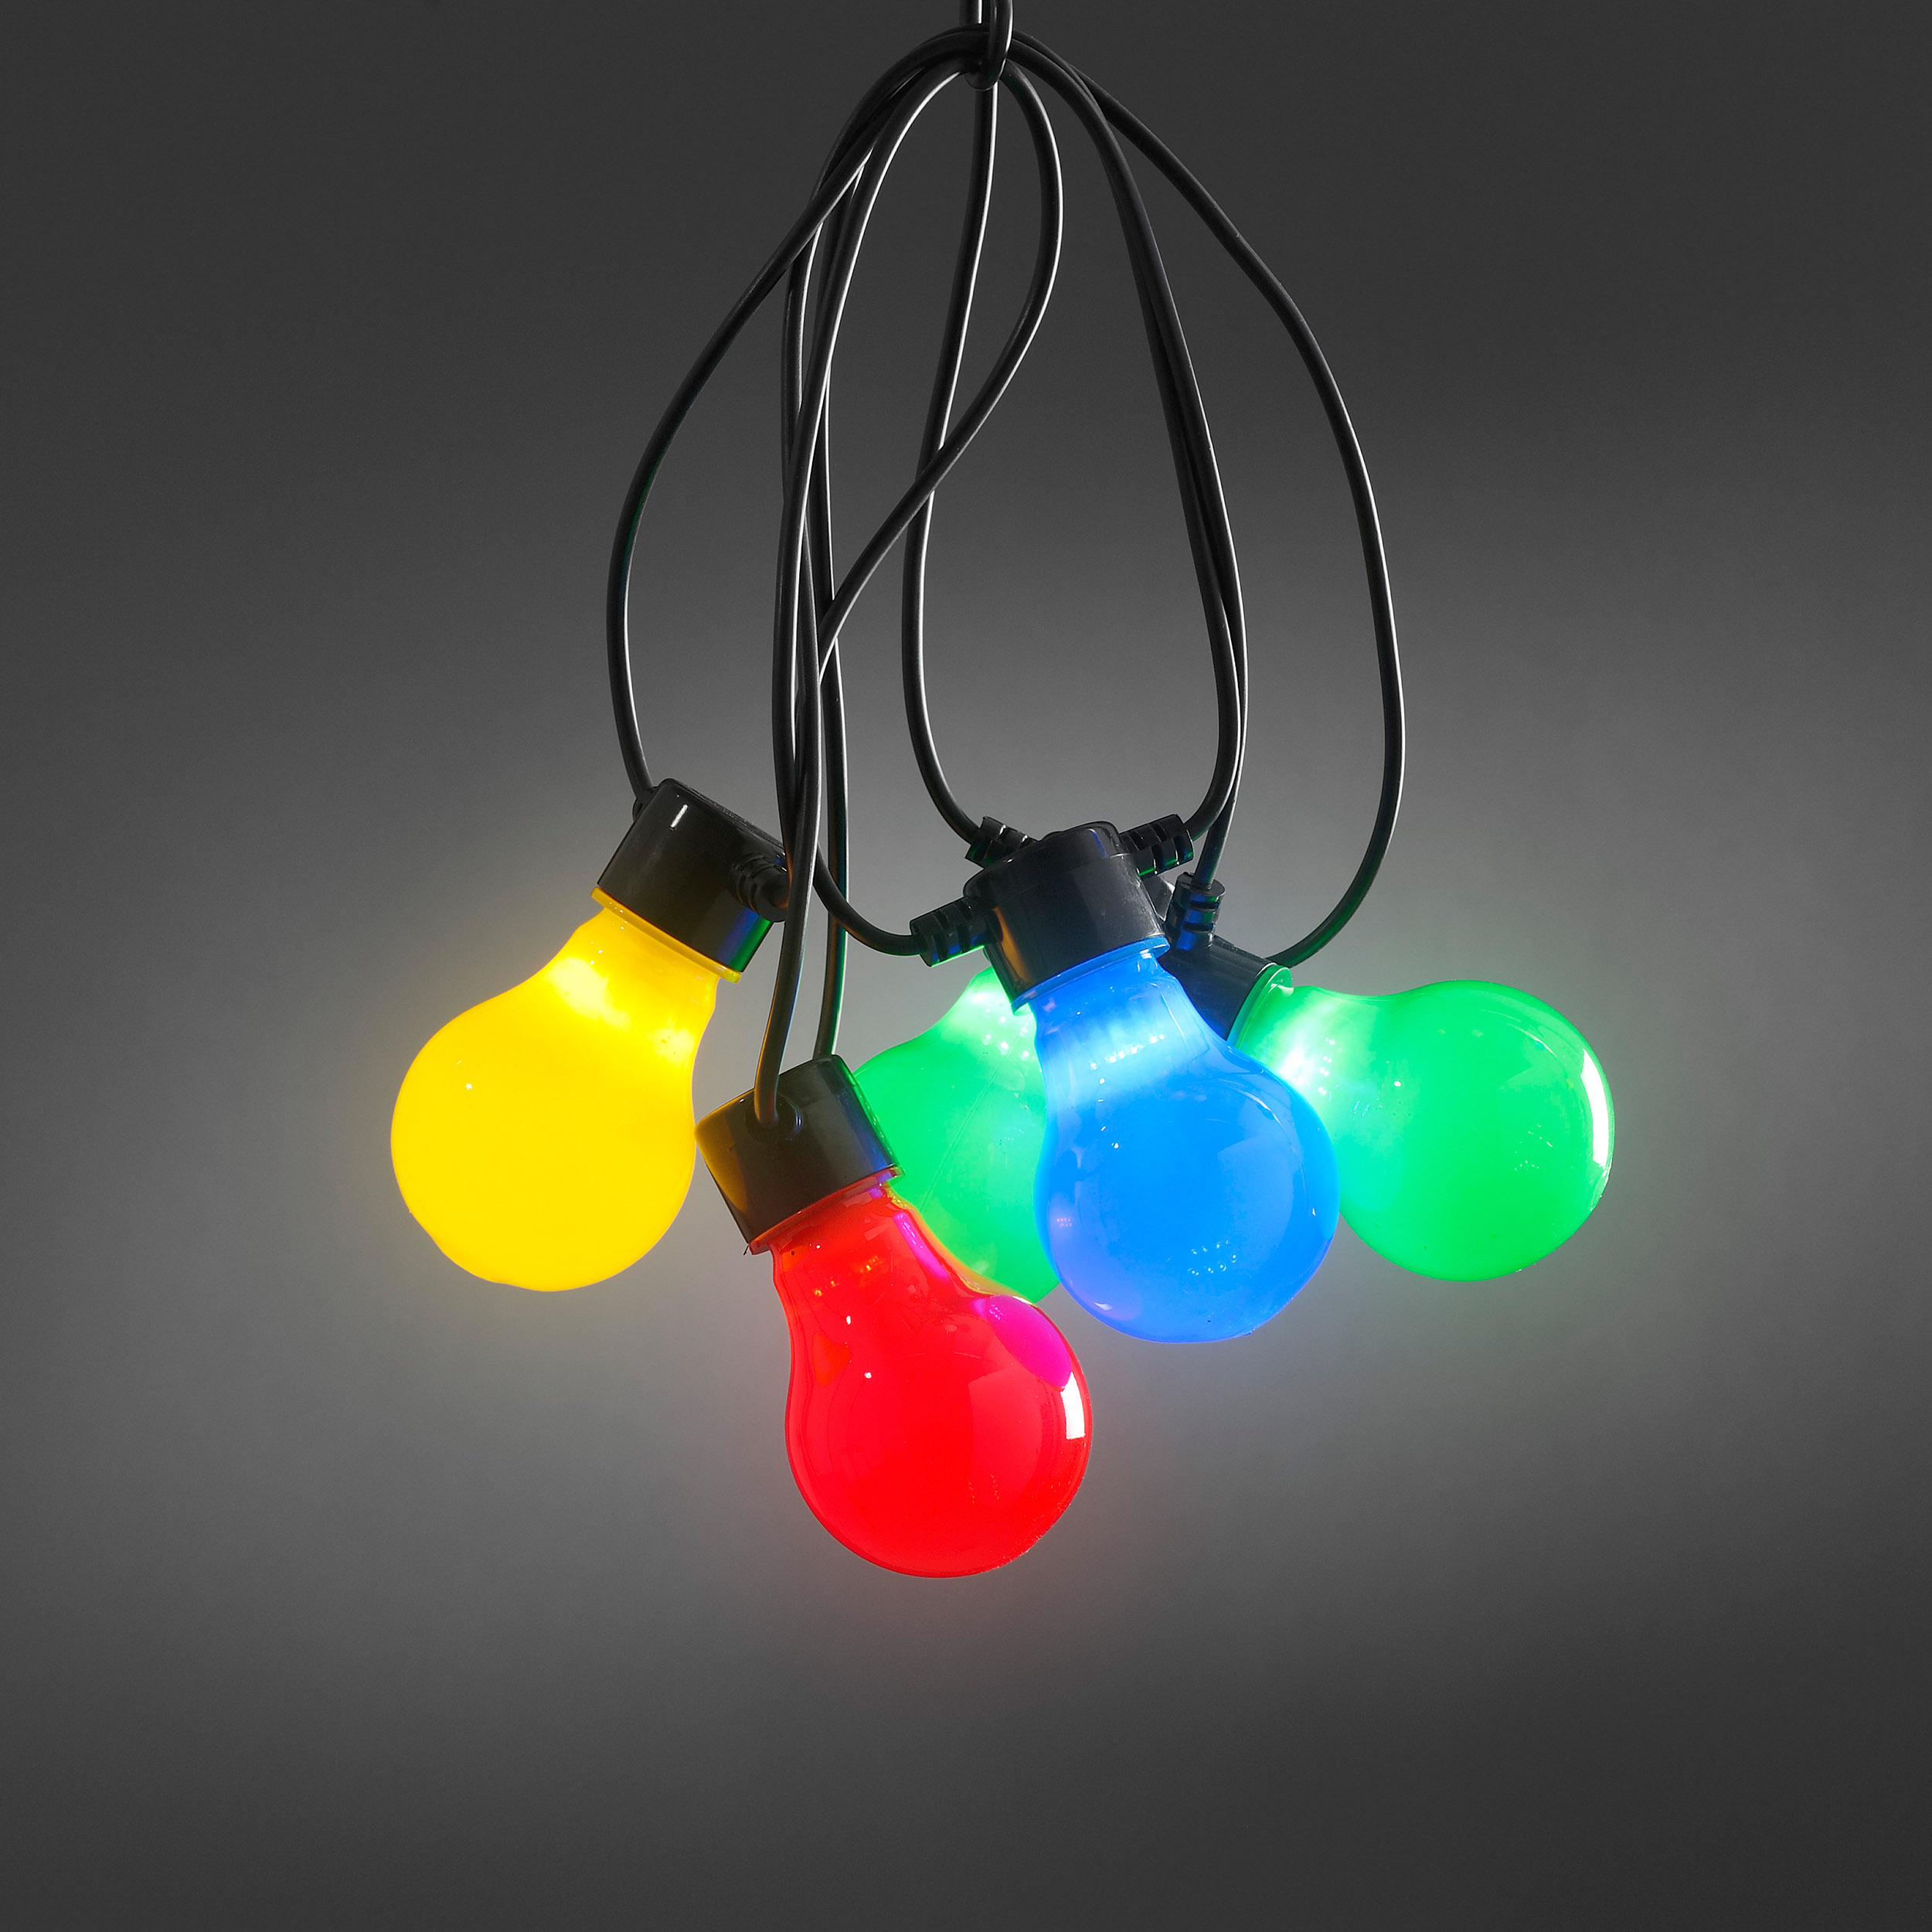 Sirag luminos cu 10 LED-uri in forma de beculet , 4.5m lungime